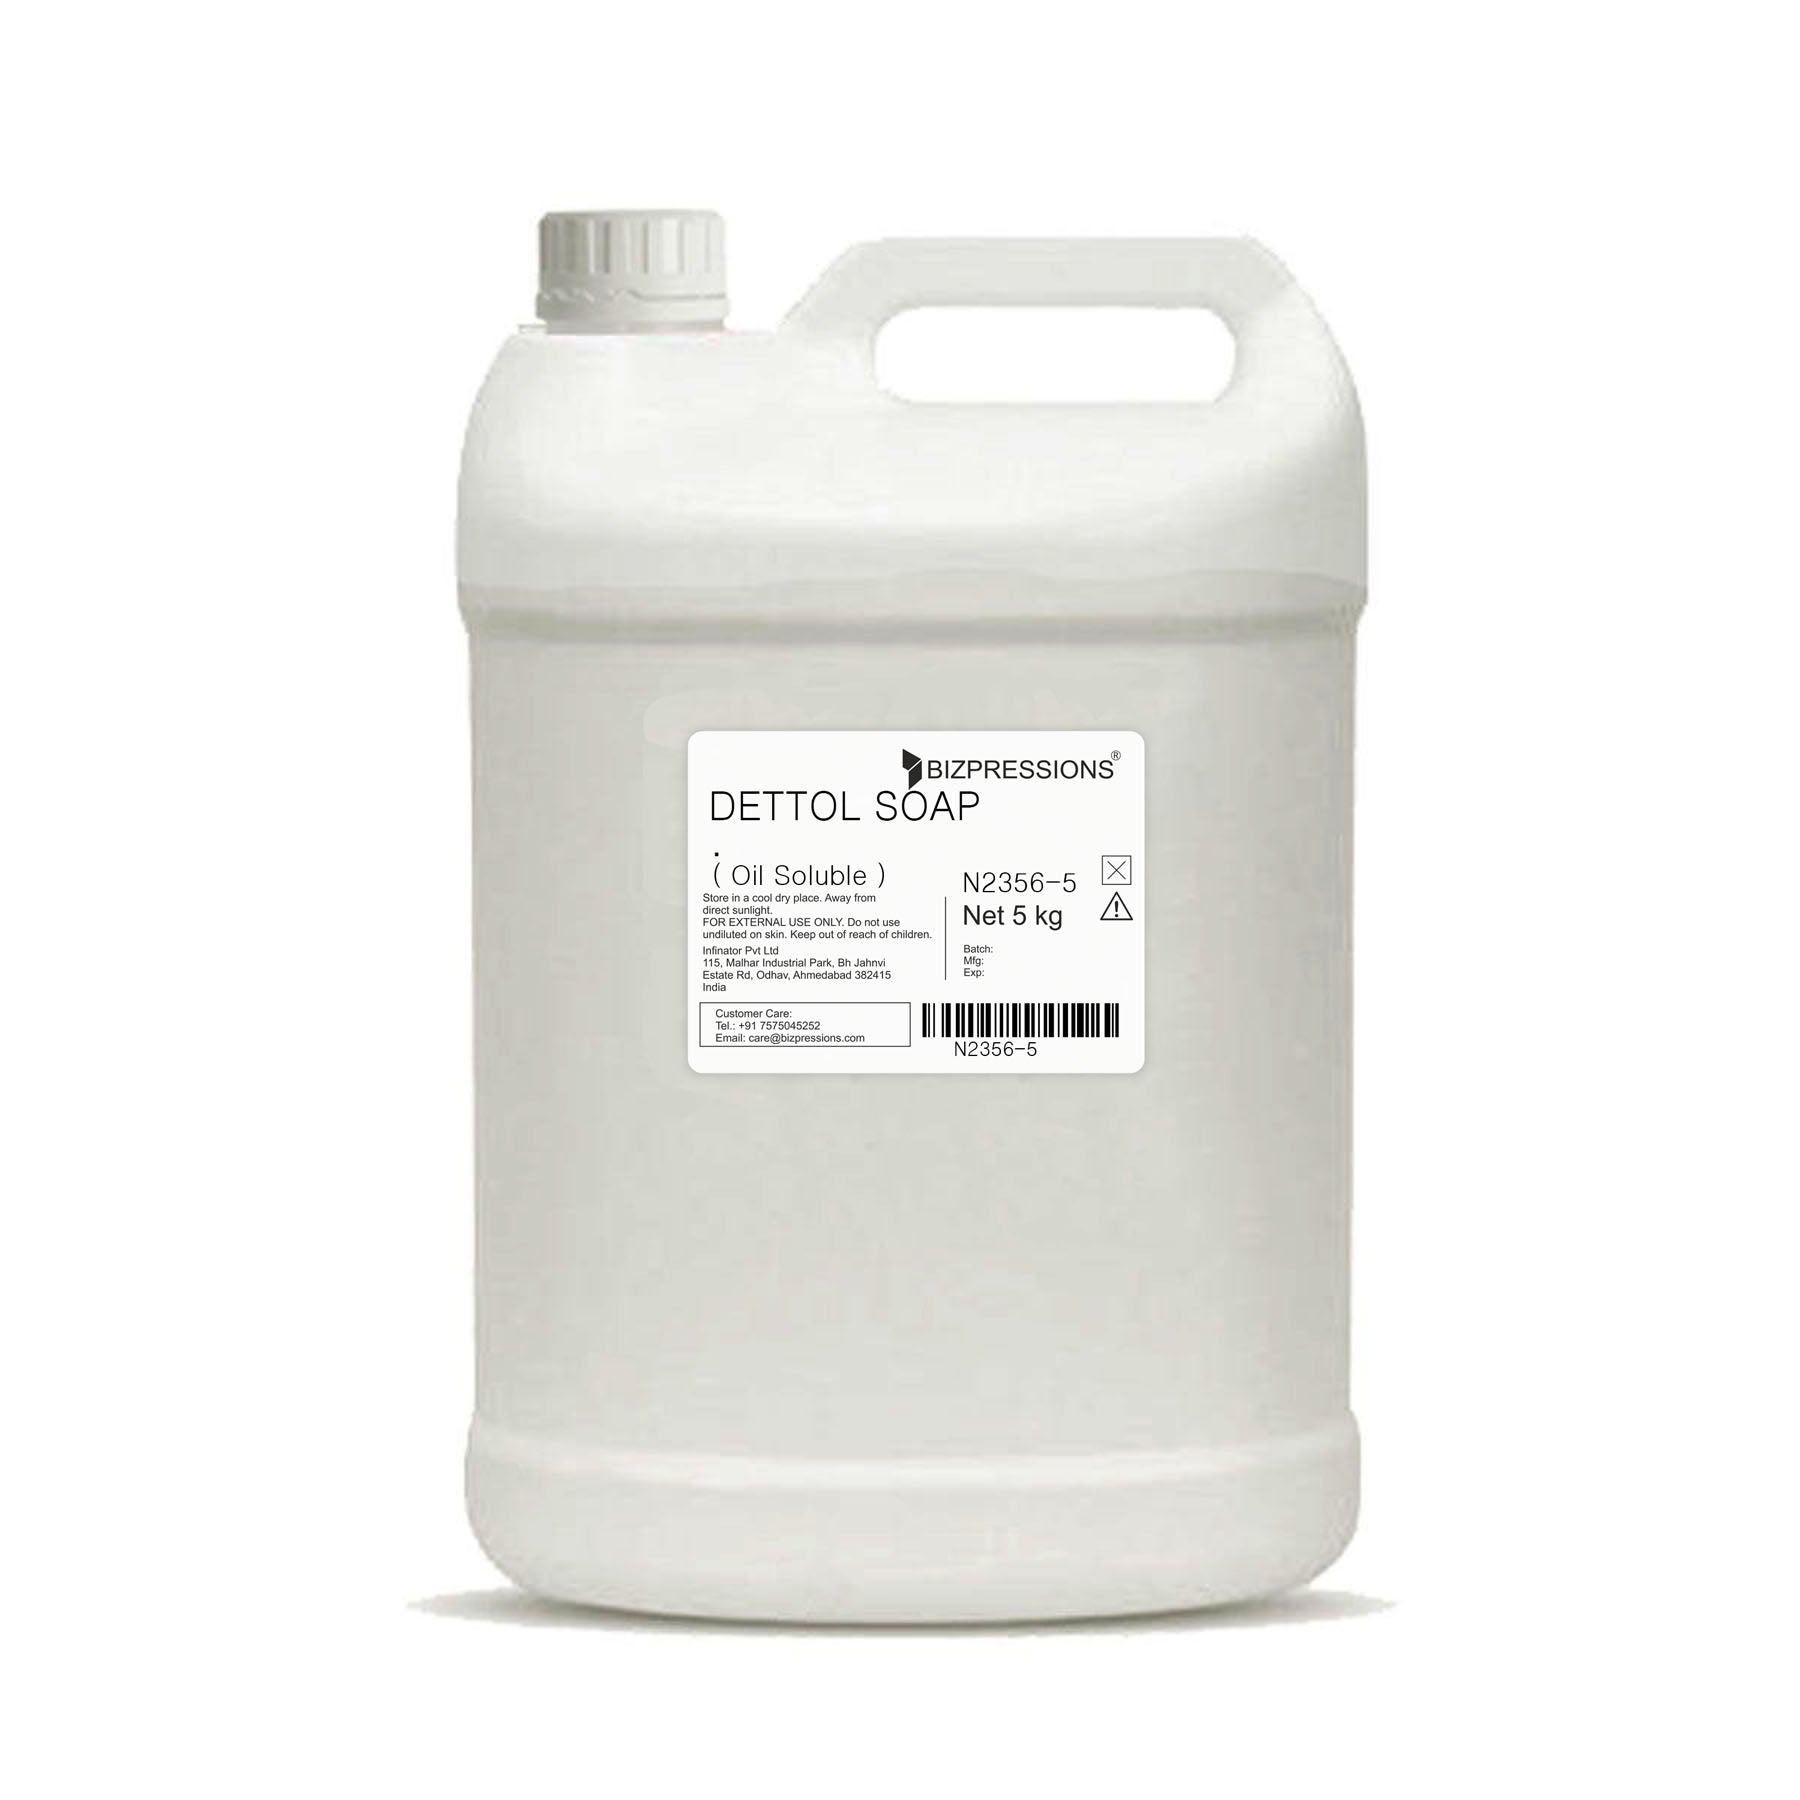 DETTOL SOAP - Fragrance ( Oil Soluble ) - 5 kg